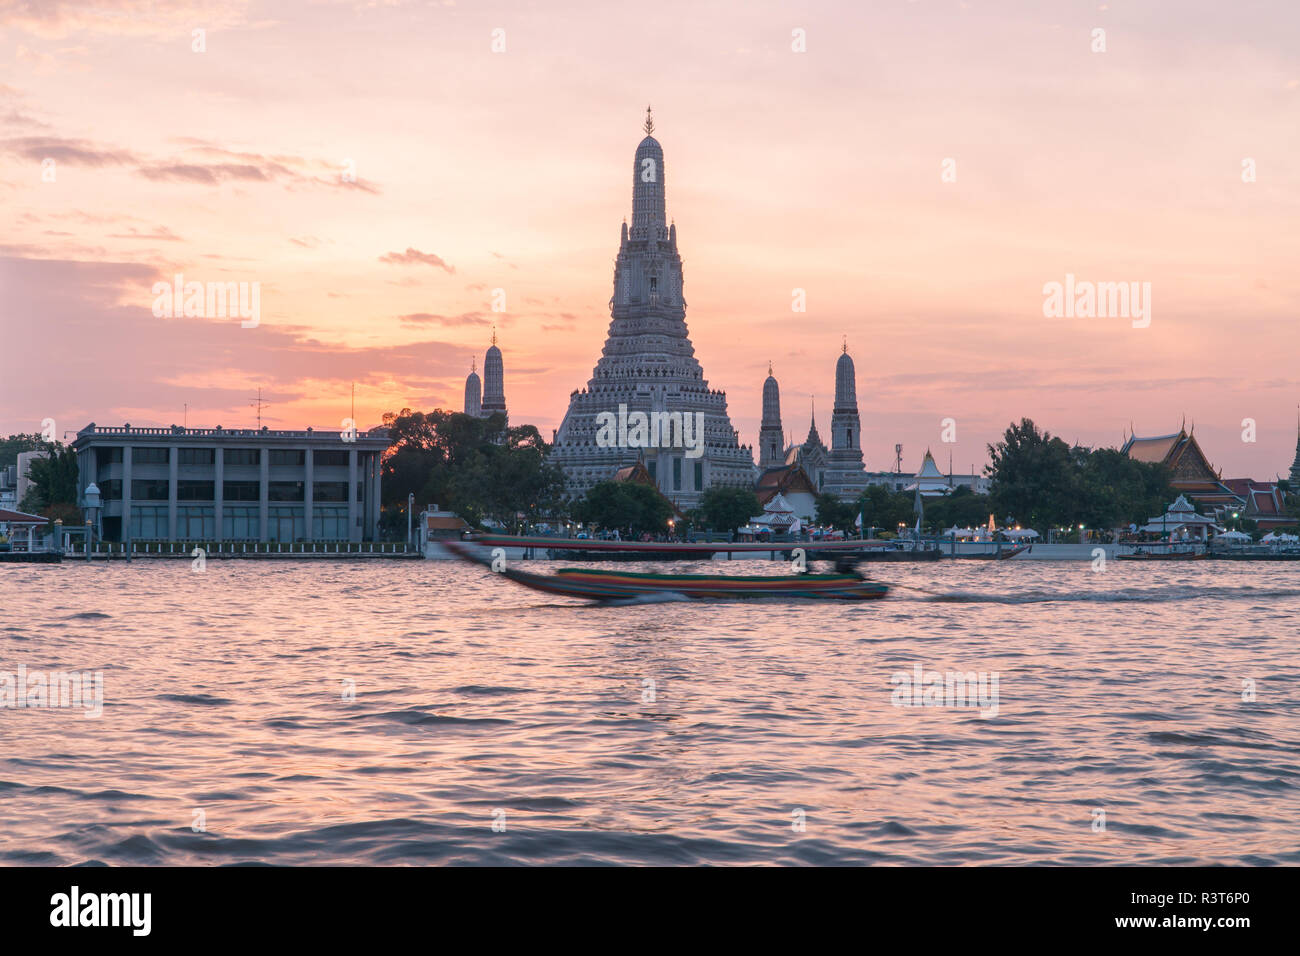 Beliebtes Touristenziel Wat Arun Tempel der Morgendämmerung über den Chao Phraya Fluss in Bangkok, Thailand bei Sonnenuntergang mit traditionellen langen Schwänzbooten Stockfoto